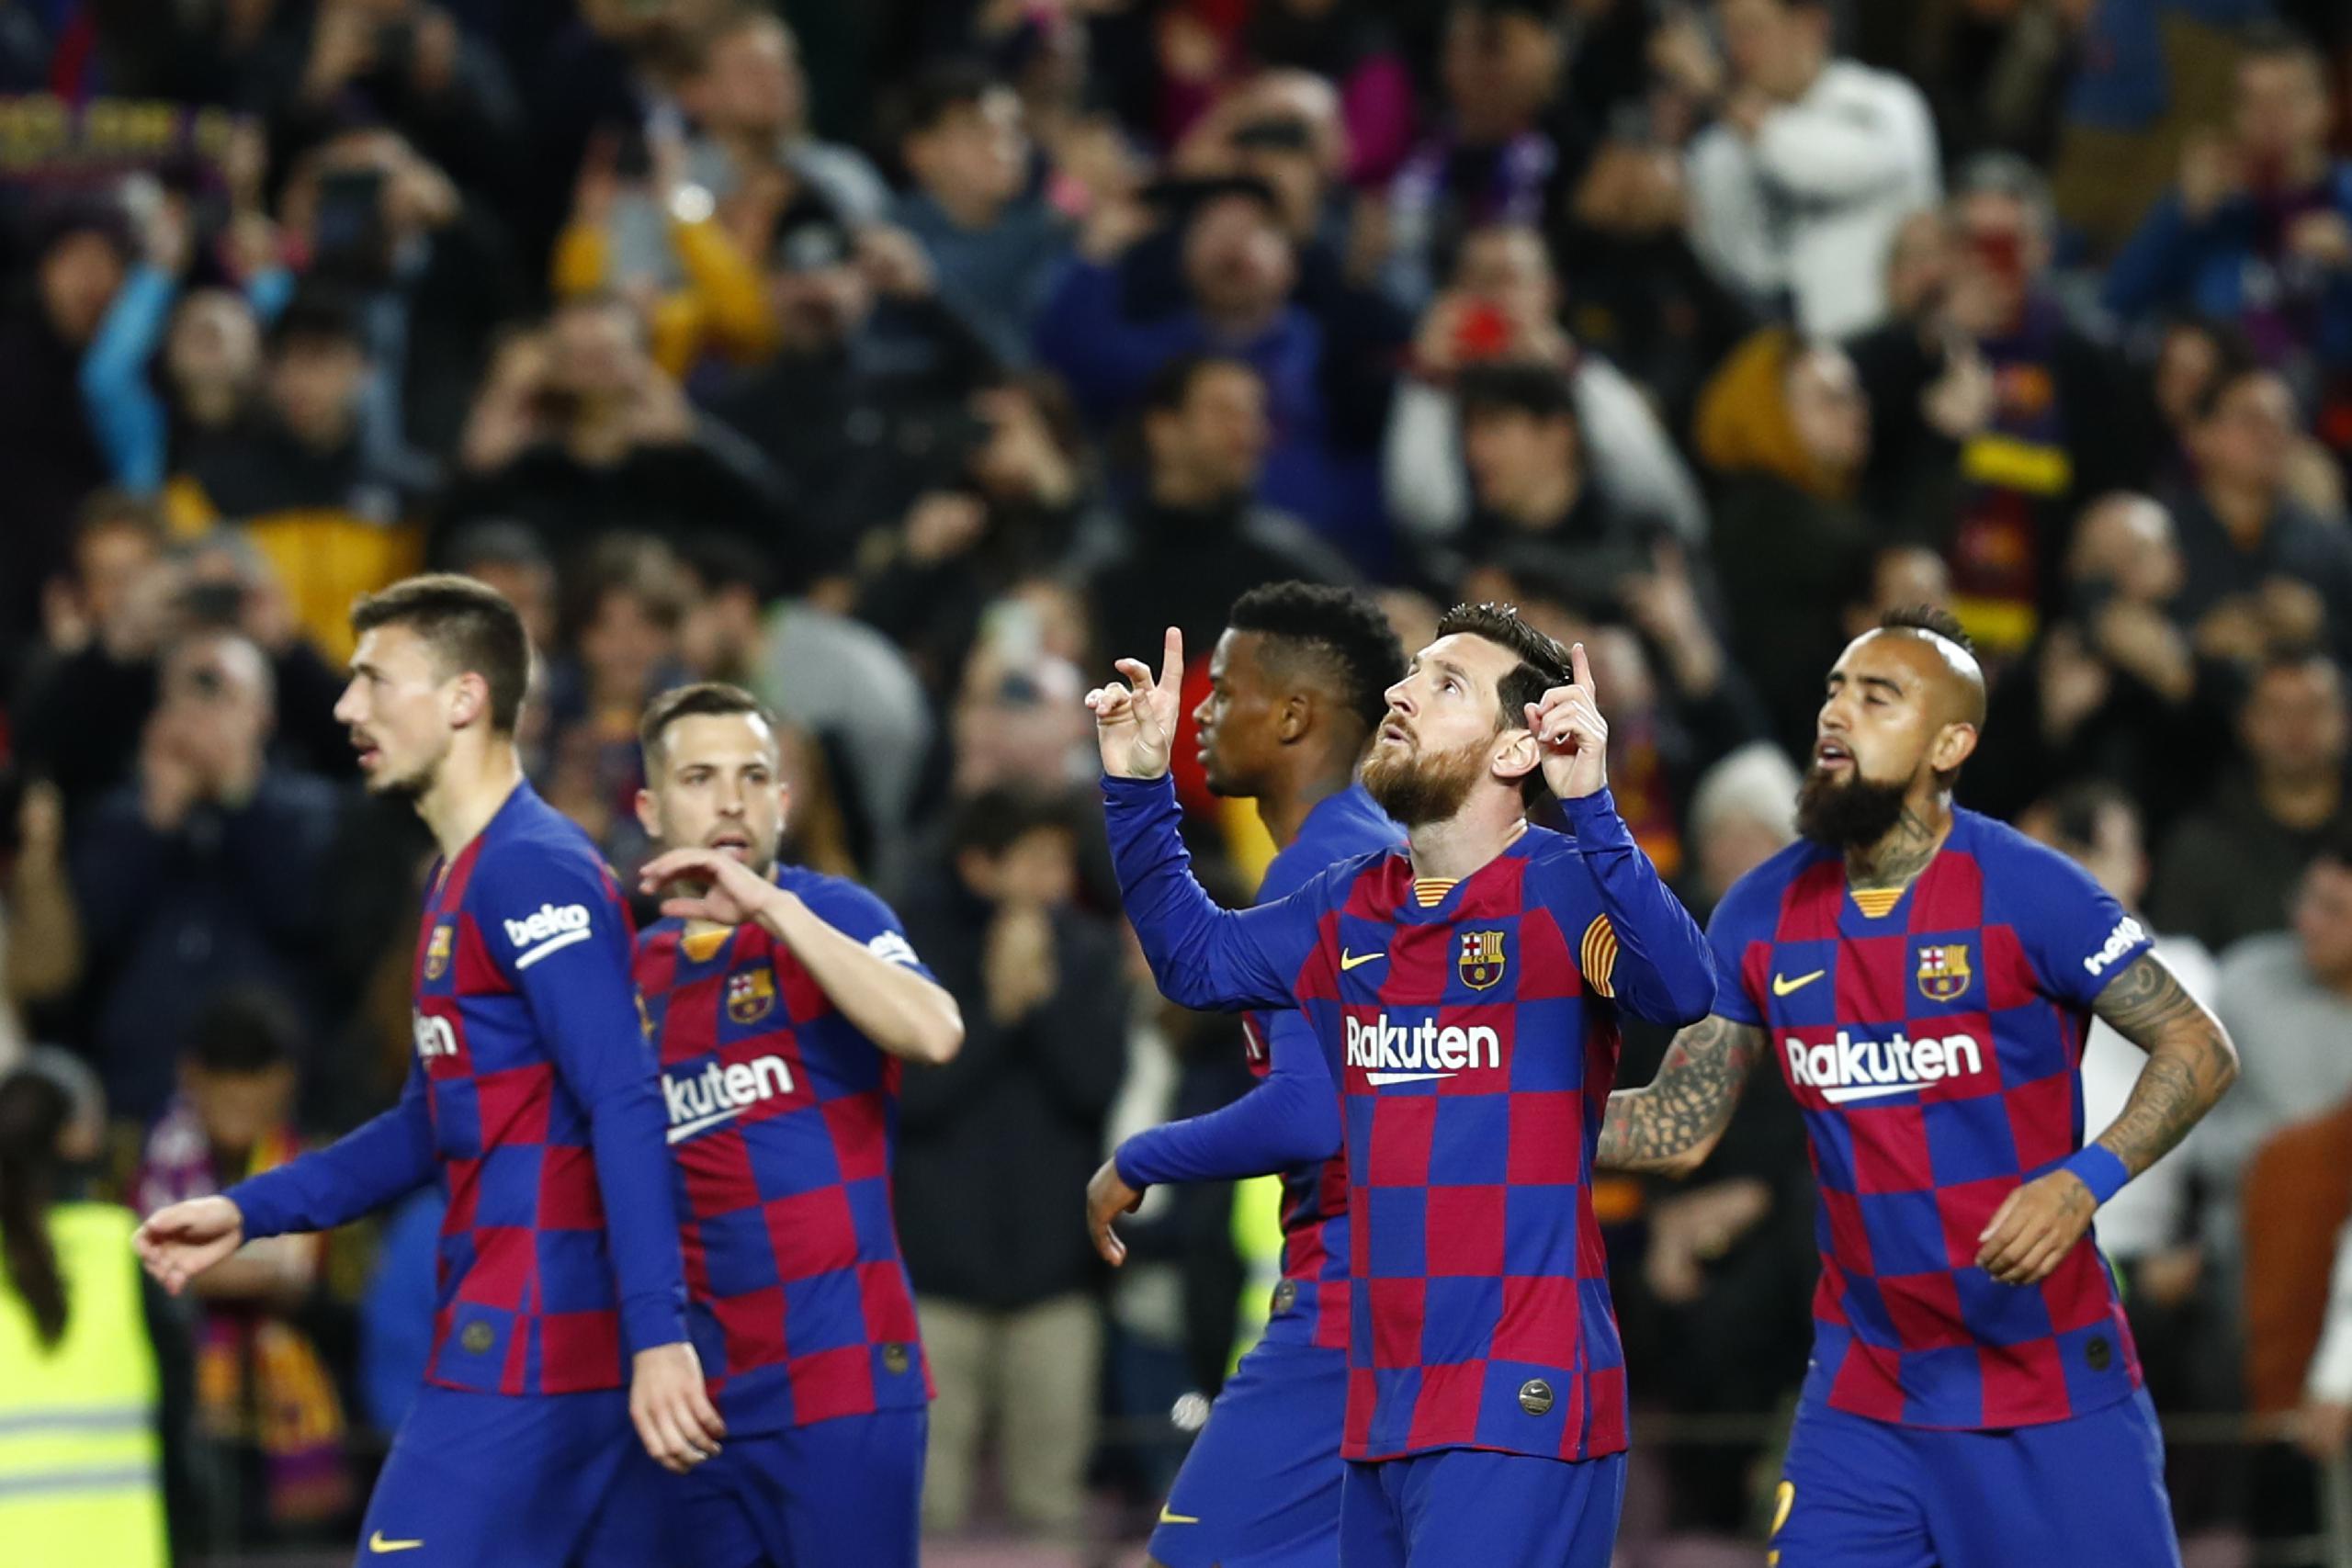 La Federación Española de fútbol tratará de completar el torneo el 30 de junio. En la imagen, Lionel Messi y sus compañeros del Barcelona celebran un gol.